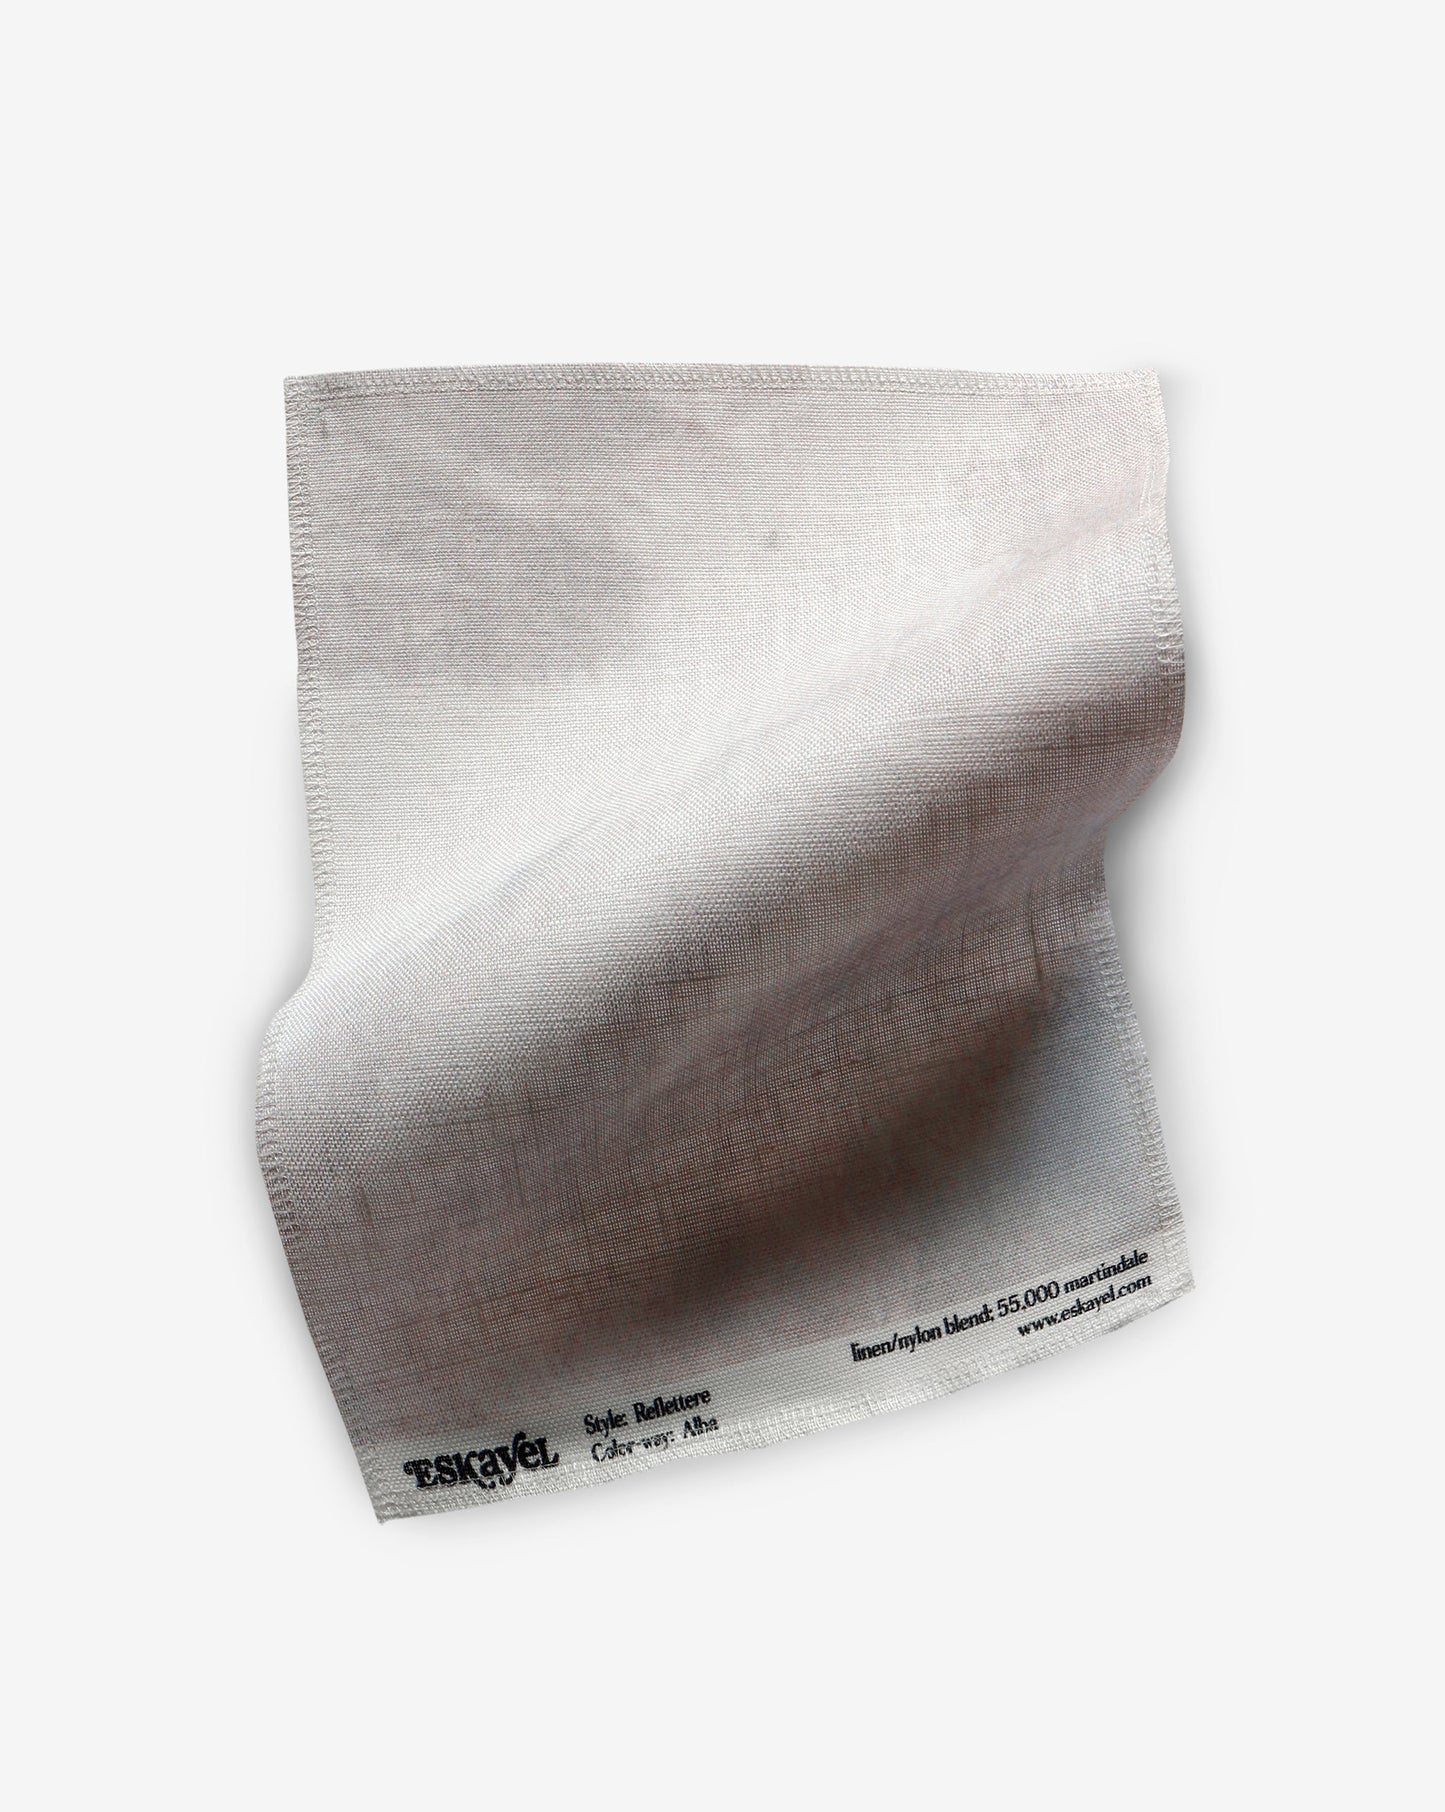 Reflettere Fabric Sample||Alba